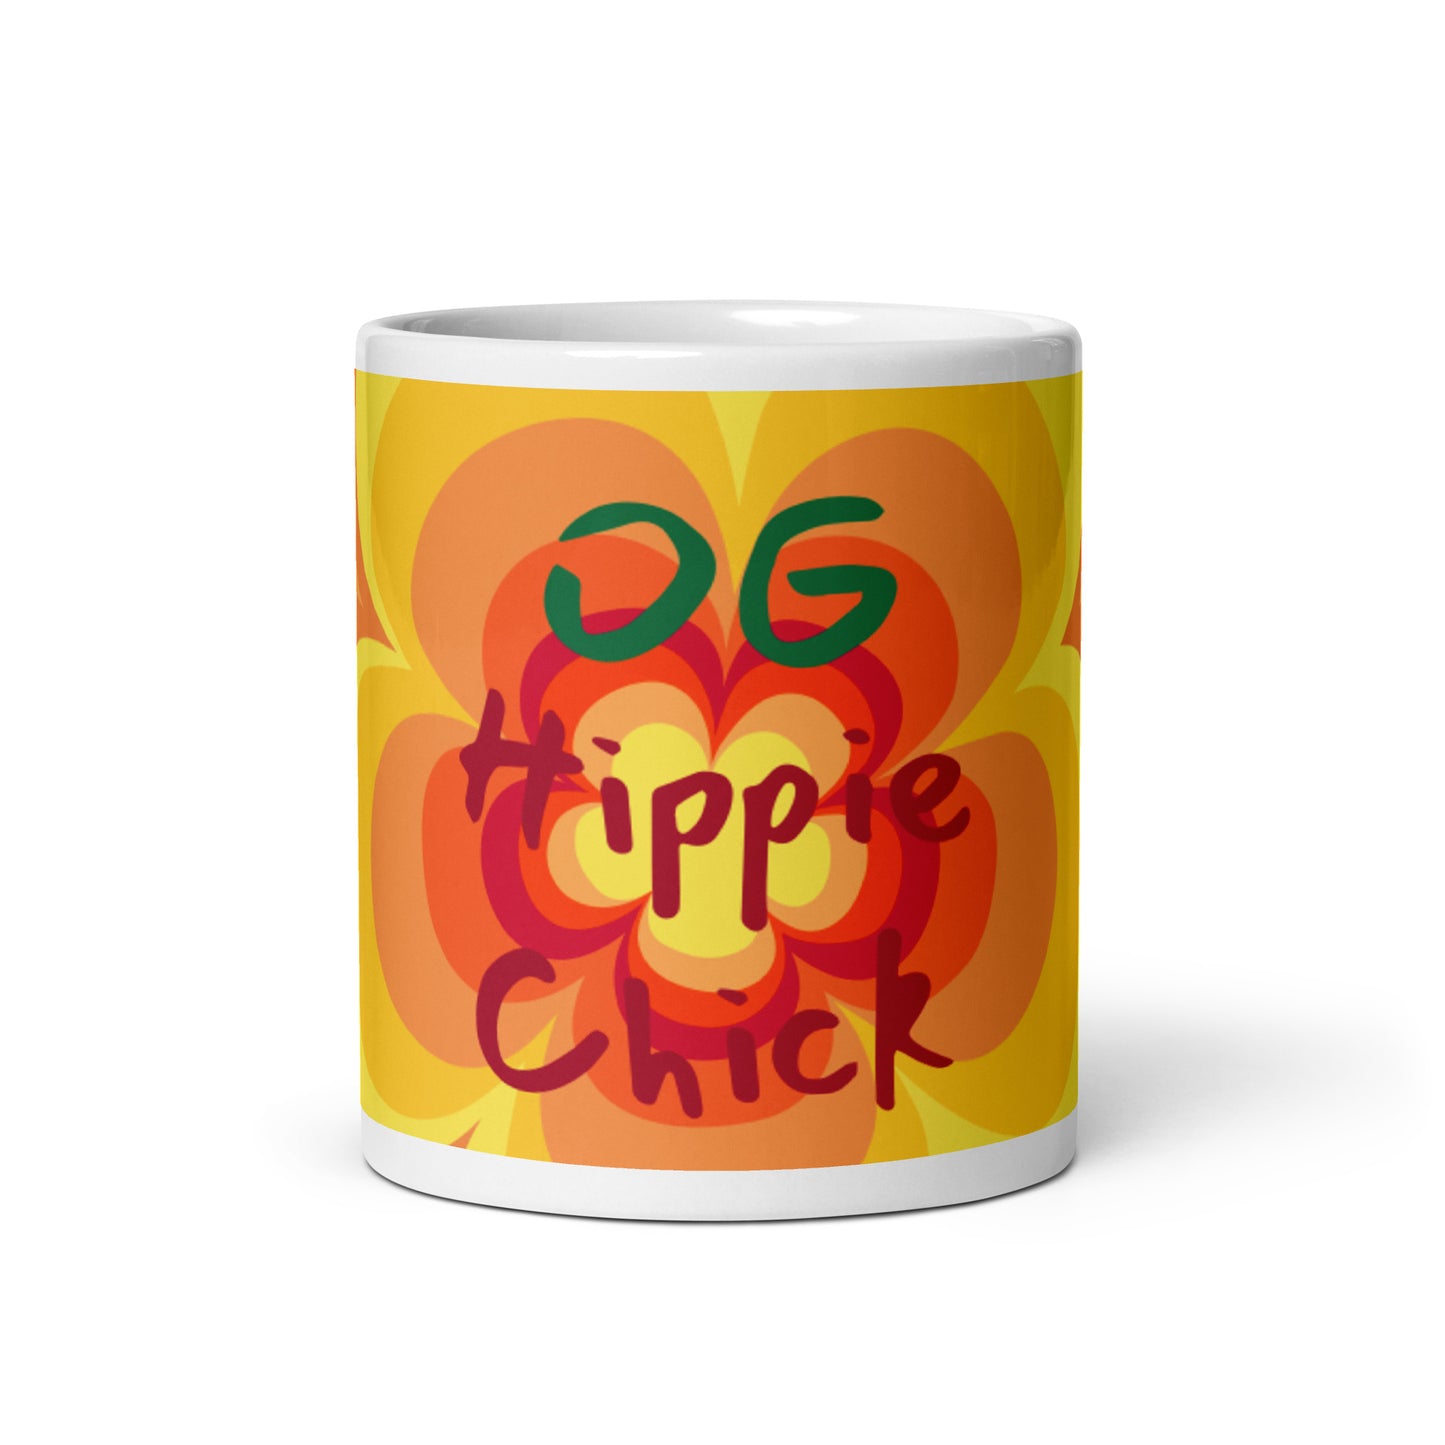 Sunny Flower 2 White Glossy Mug - OG Hippie Chick